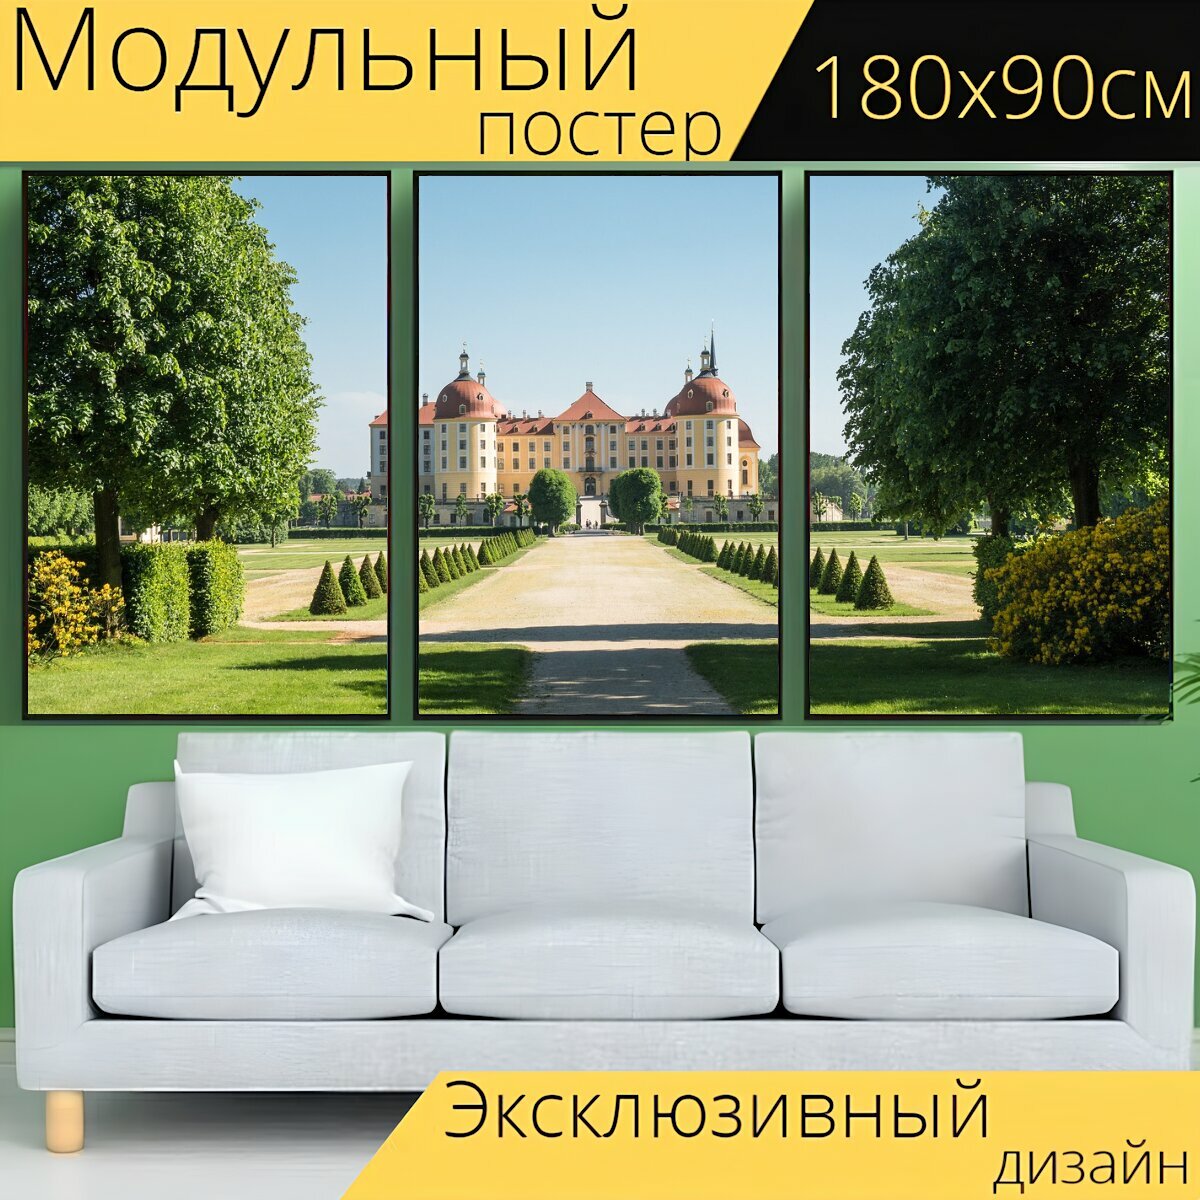 Модульный постер "Дворец, замок, охотничий дворец" 180 x 90 см. для интерьера